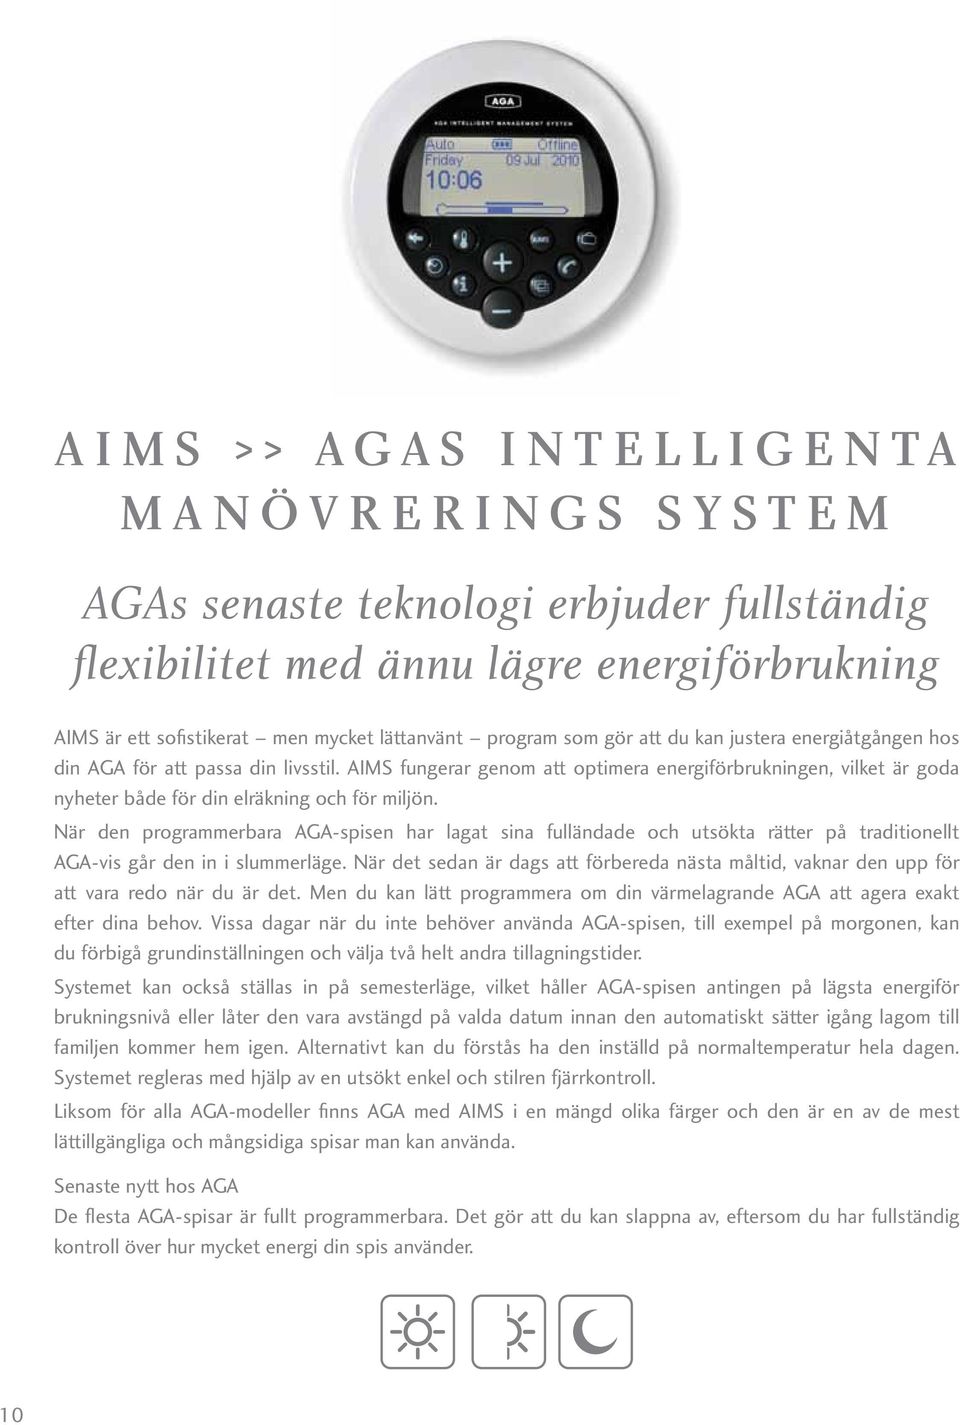 AIMS fungerar genom att optimera energiförbrukningen, vilket är goda nyheter både för din elräkning och för miljön.